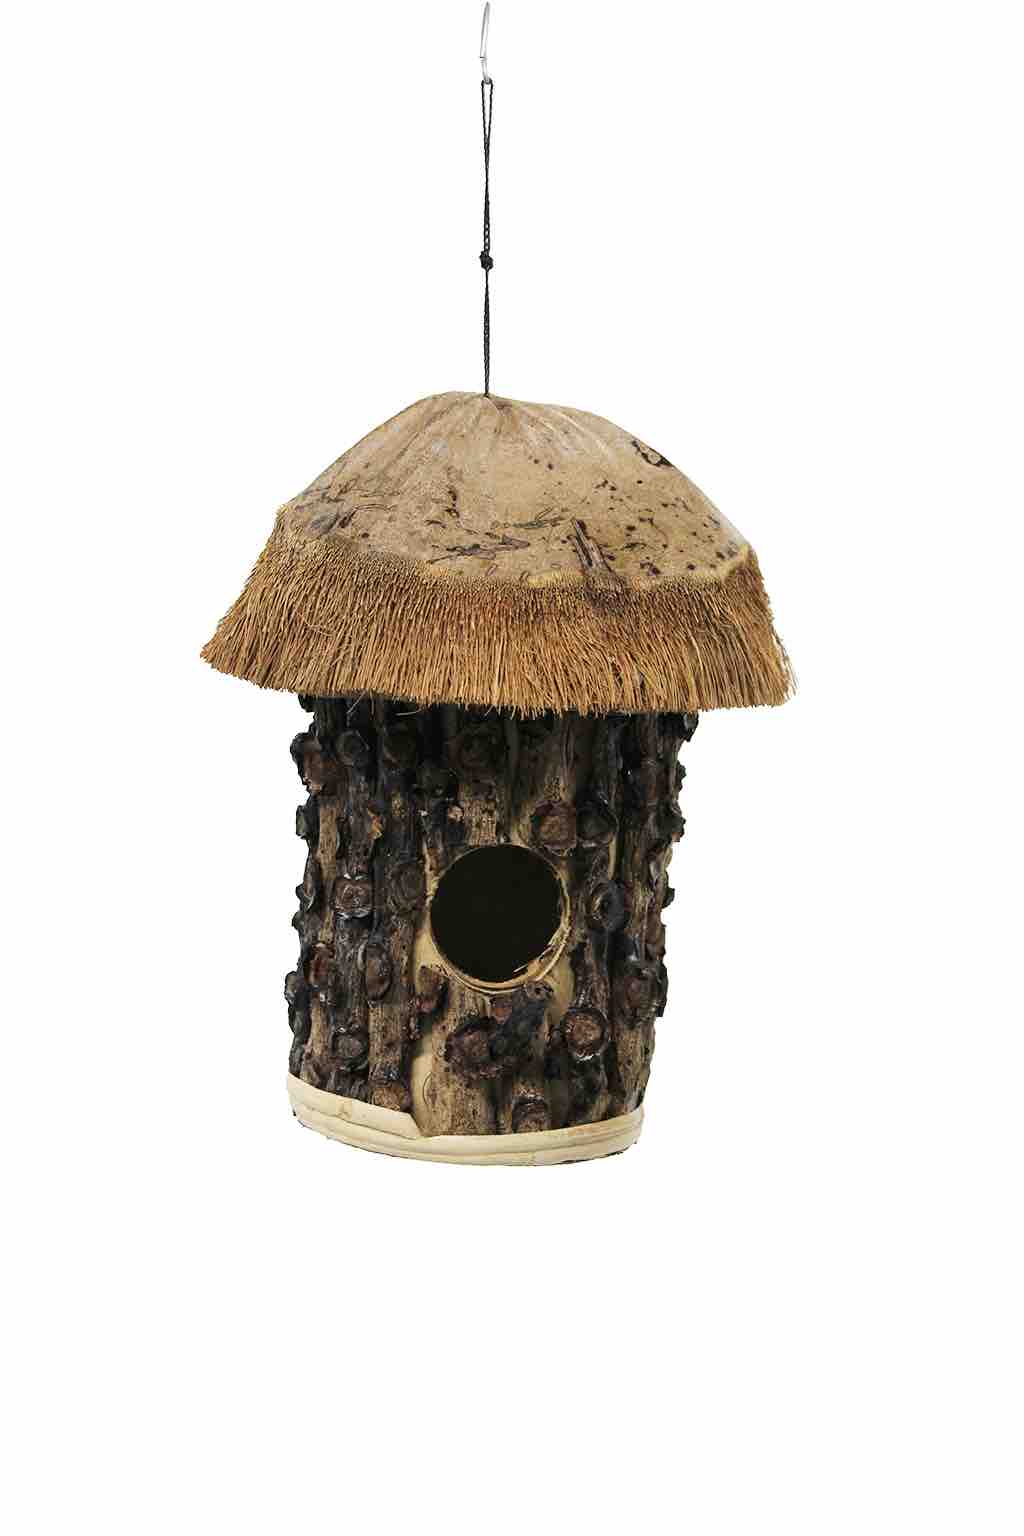 Vogelhuis met kokos dak